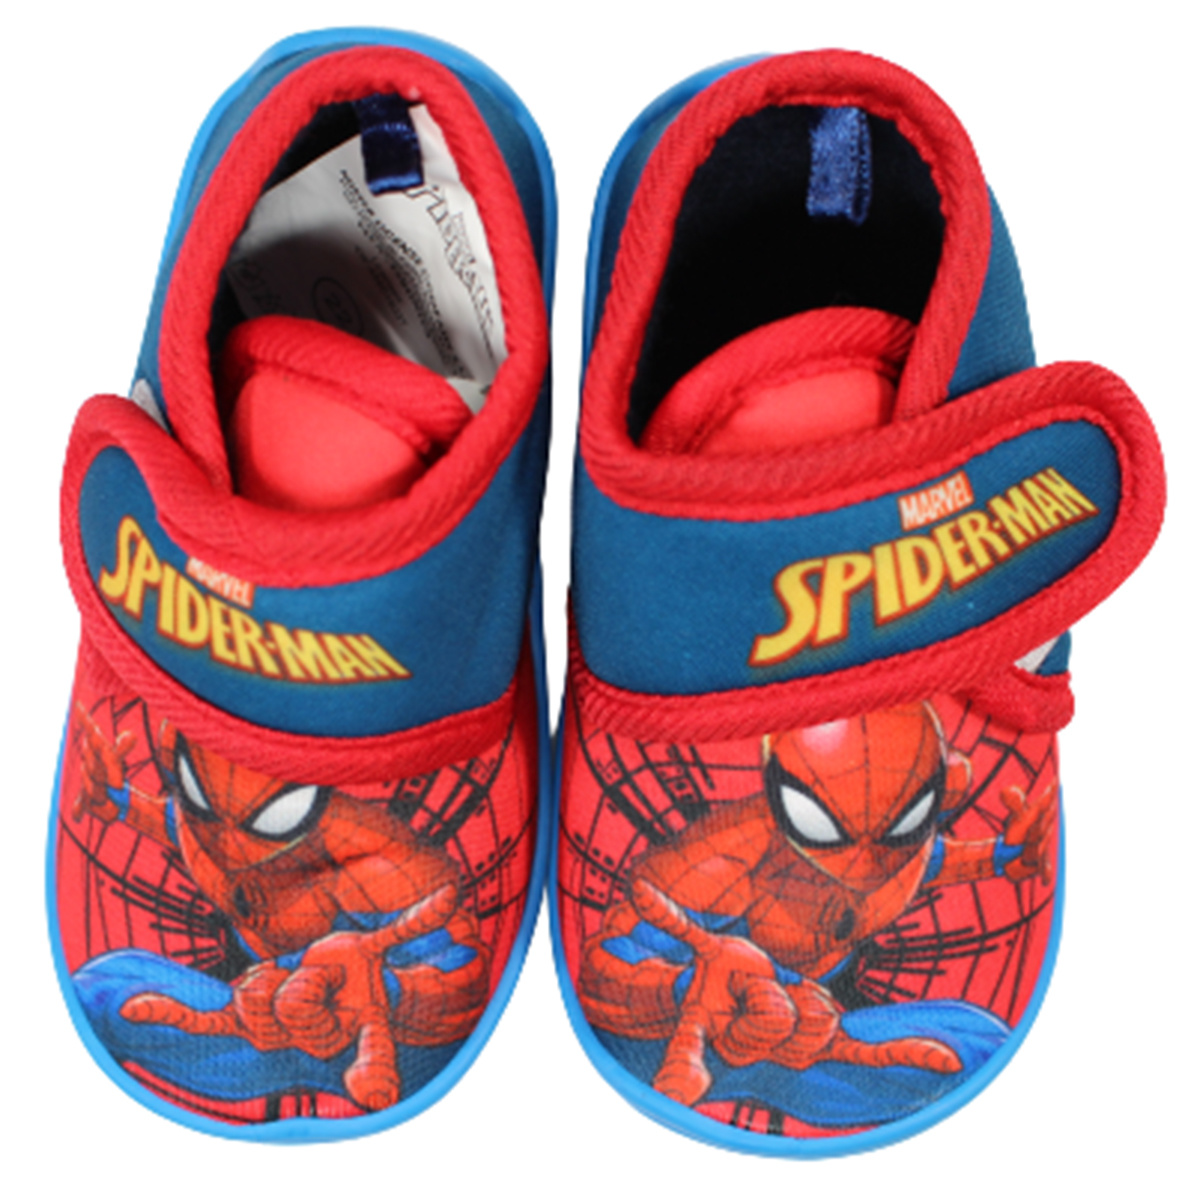 Vervreemden analyseren duidelijk Spiderman Pantoffels - Marvel - 123Kinderwinkel